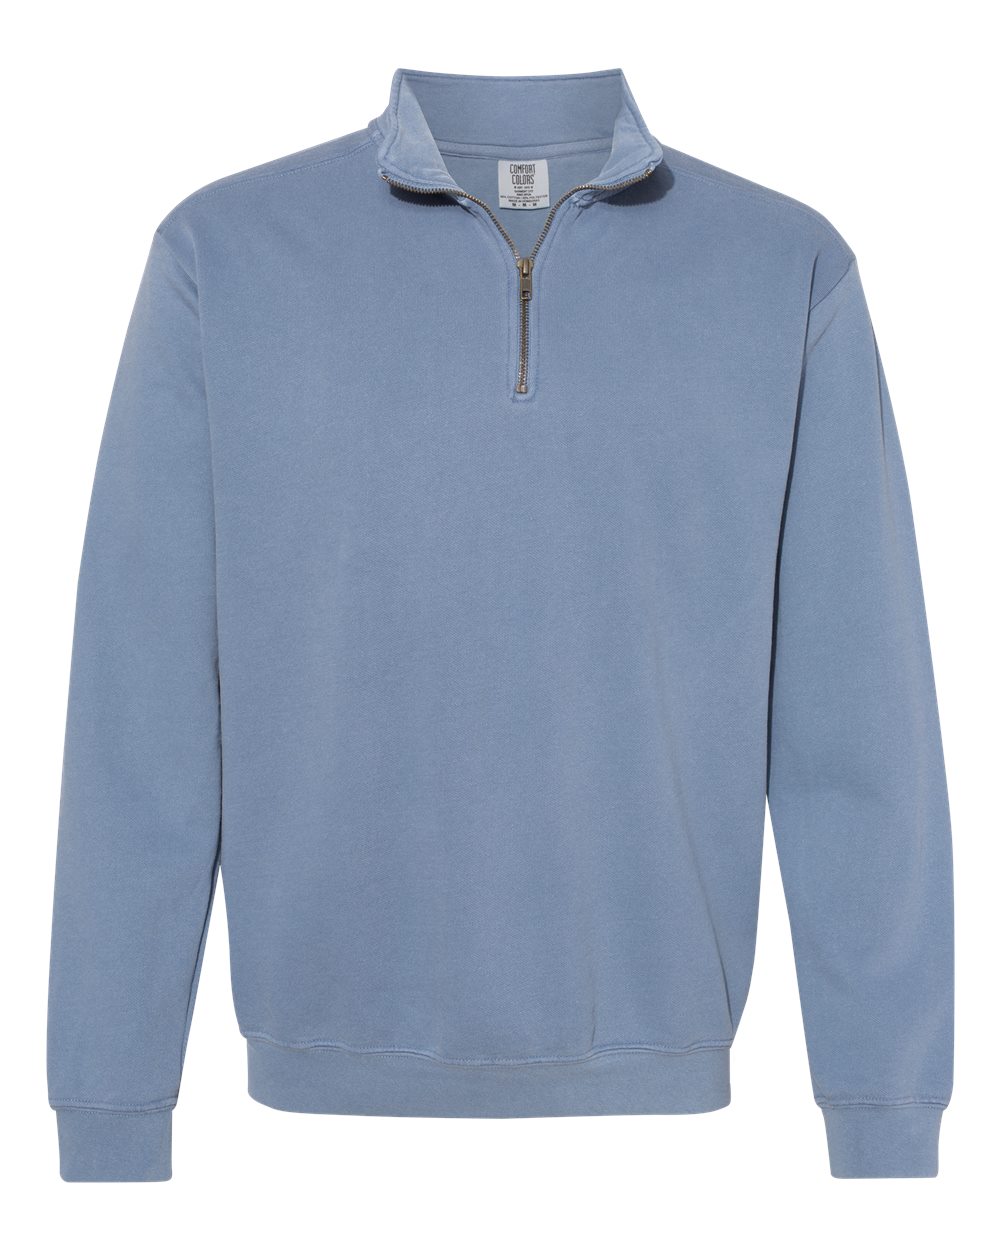 1580 Adult 1/4 Zip Sweatshirt, Comfort Colors